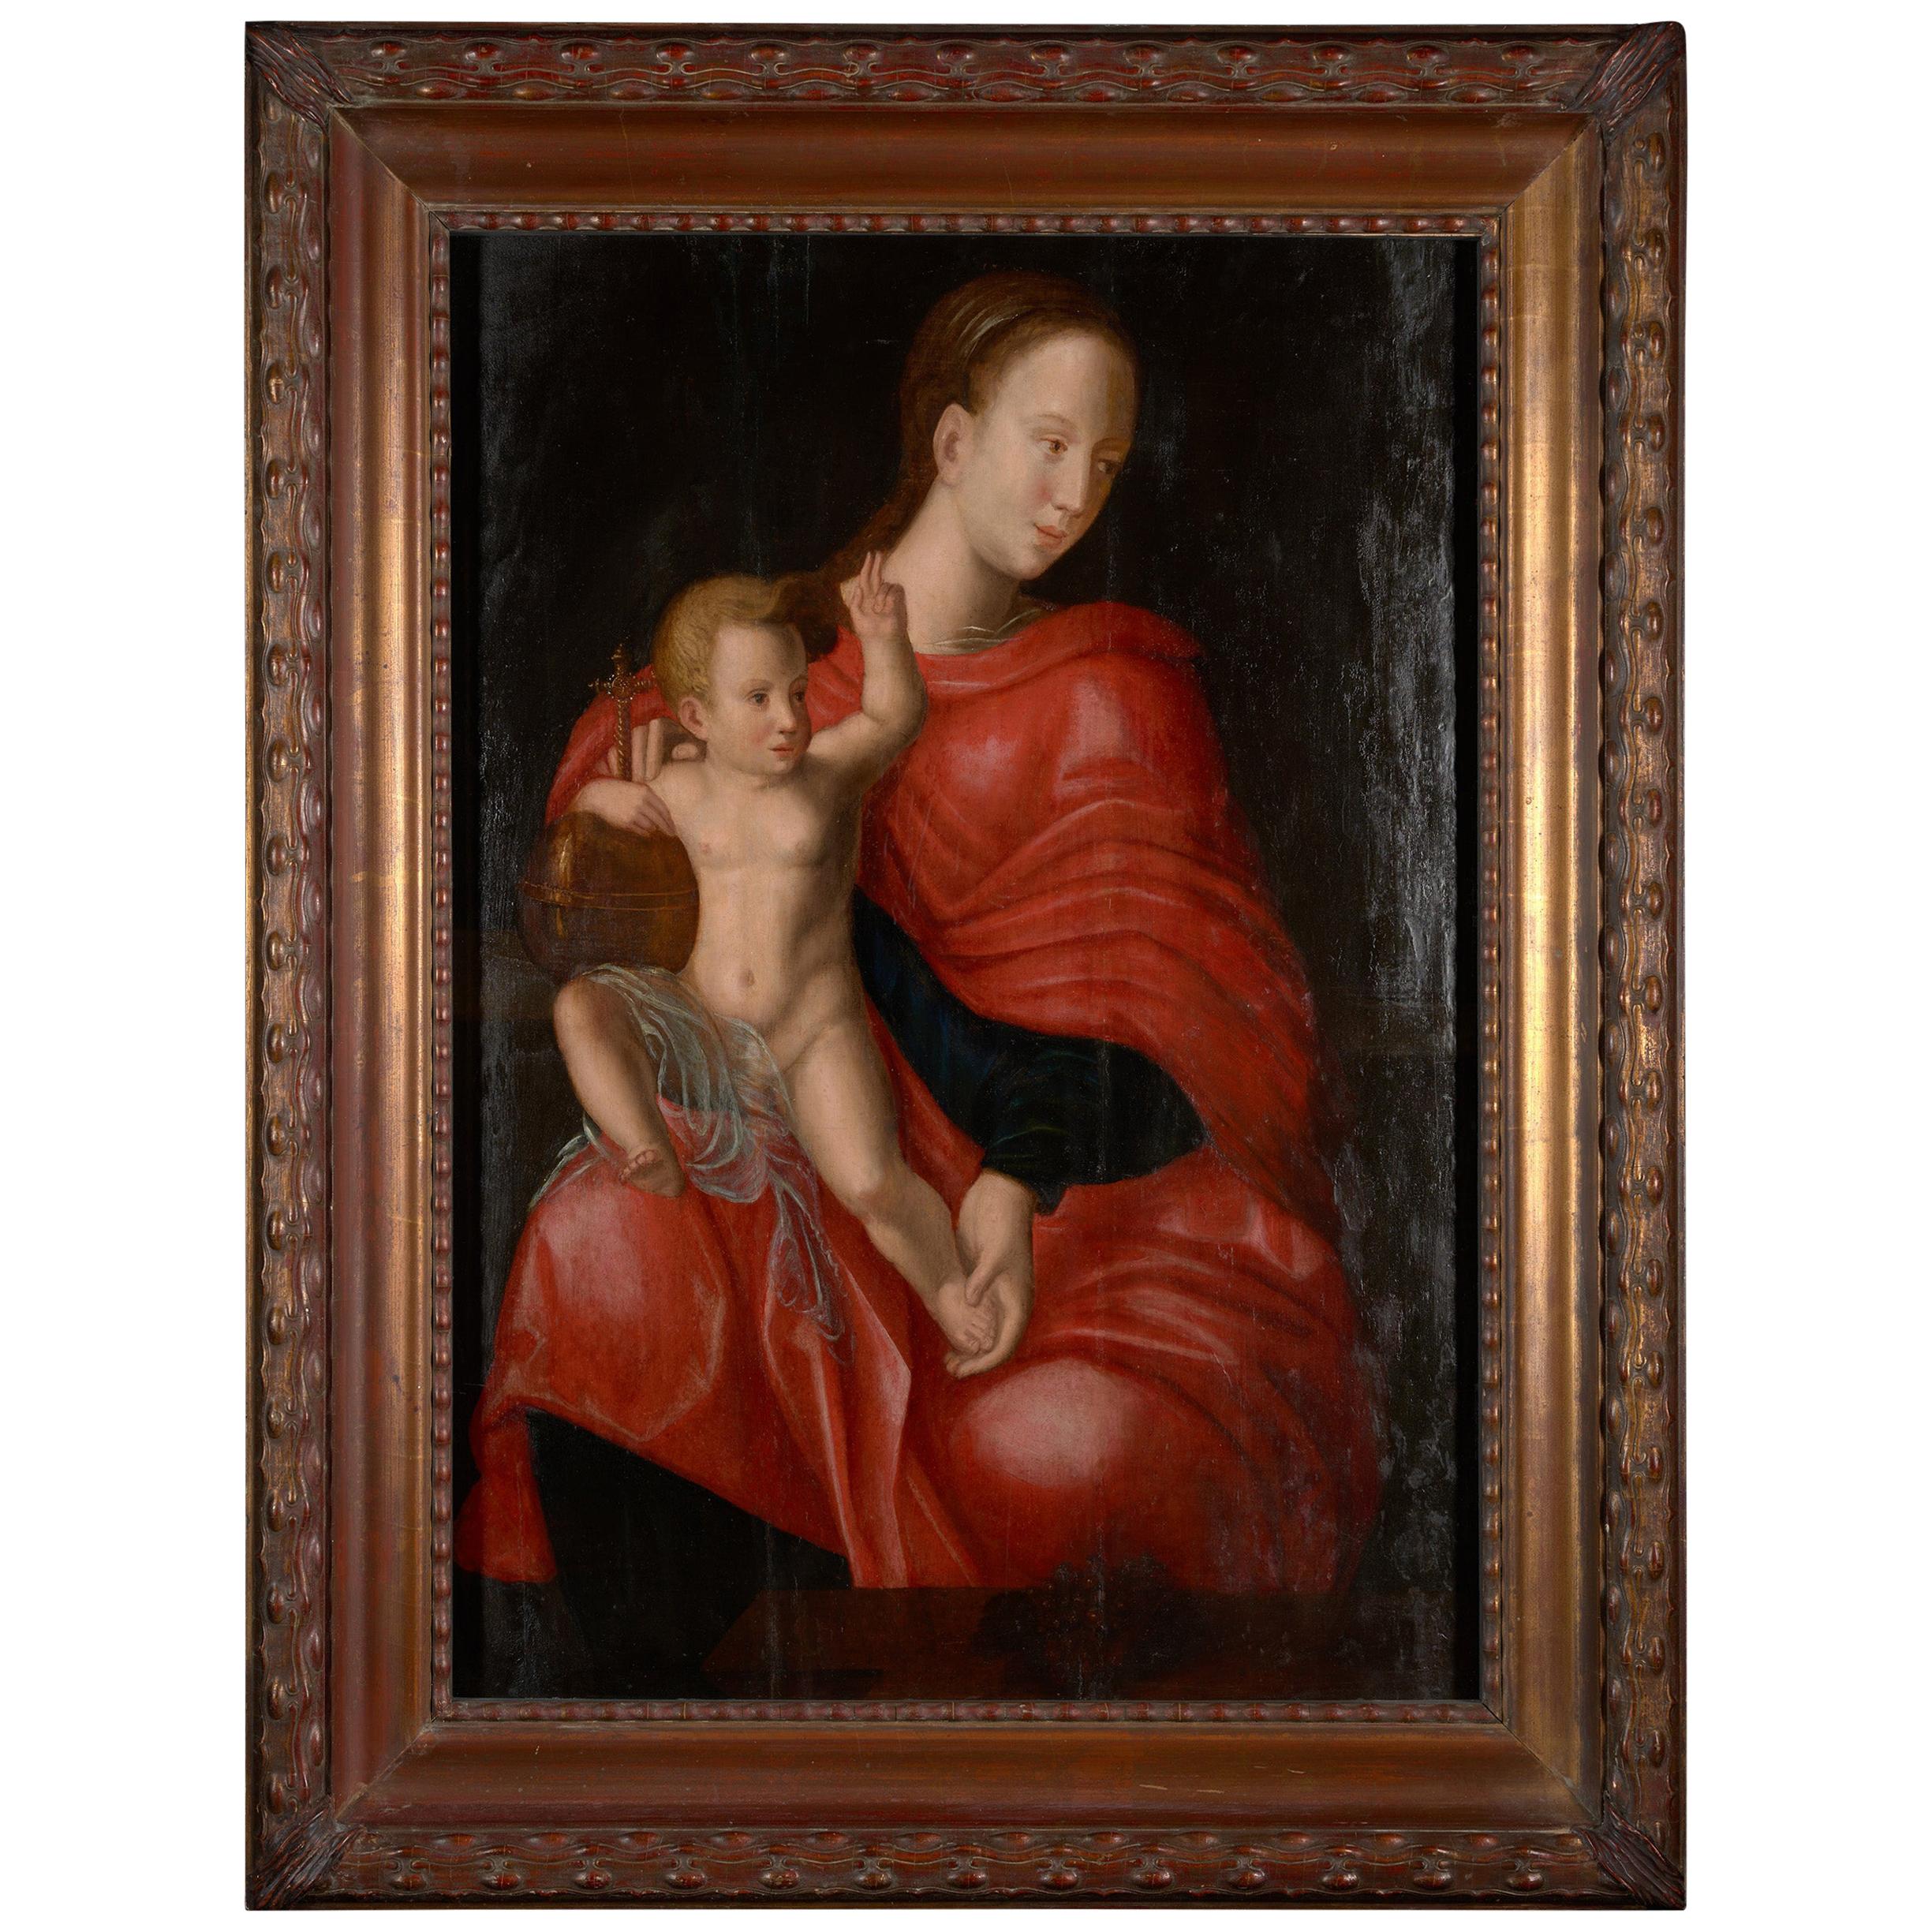 Dieses schöne Gemälde aus dem 17. Jahrhundert stammt aus dem letzten Teil der europäischen Renaissance, auch bekannt als Hochrenaissance, Ende des 17. Jahrhunderts. Diese Szene stellt die Madonna mit ihrem Kind dar. Maria steht in der Mitte des